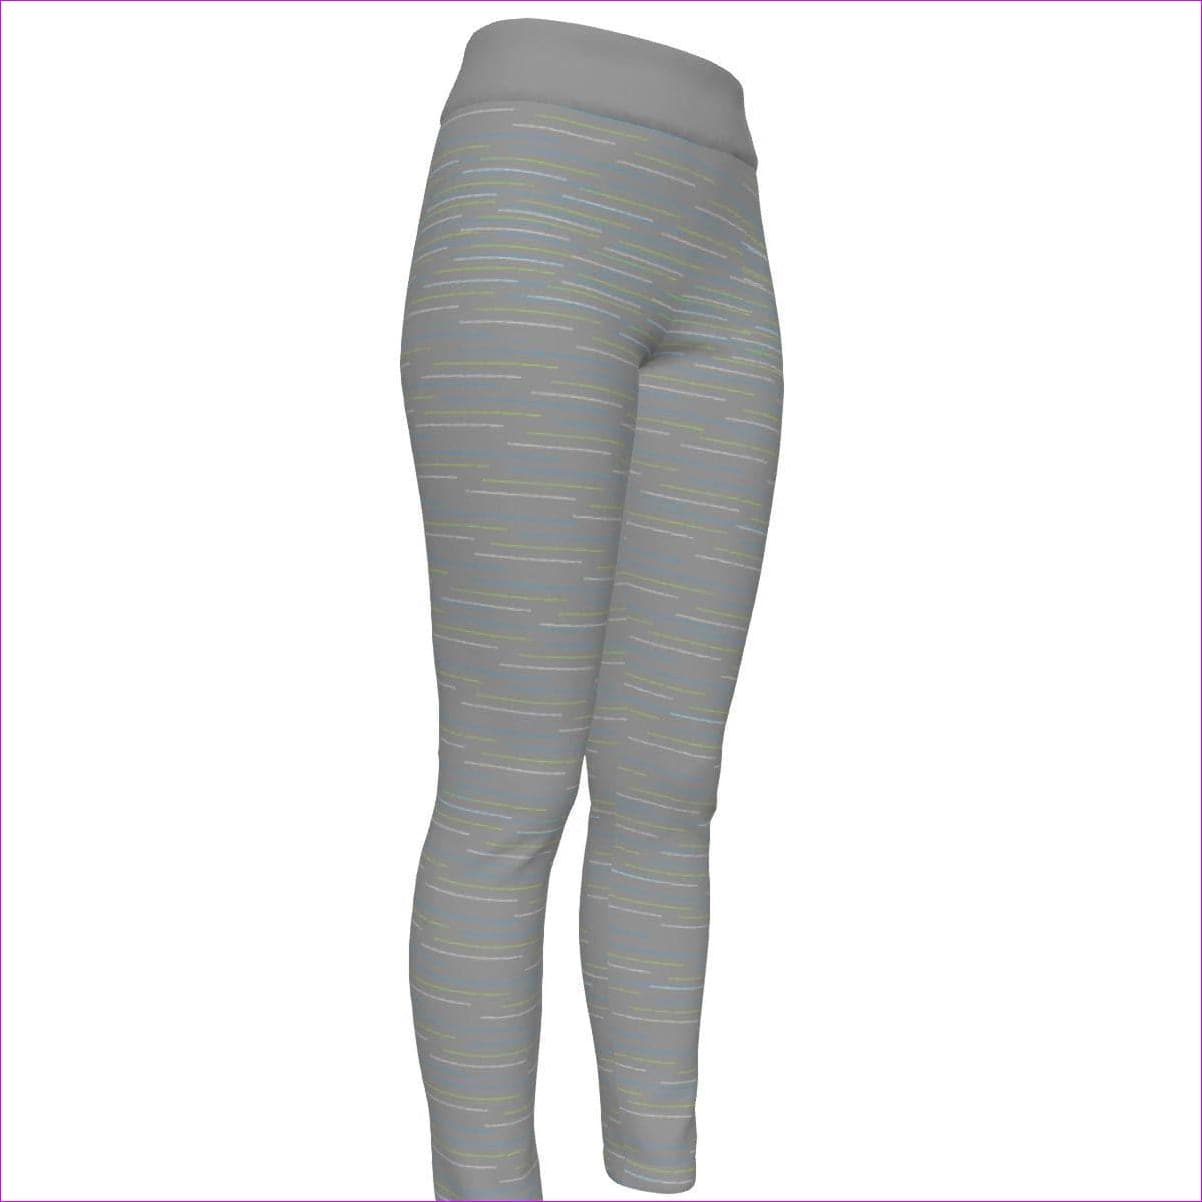 Gray Linear High Waist Leggings - women's leggings at TFC&H Co.